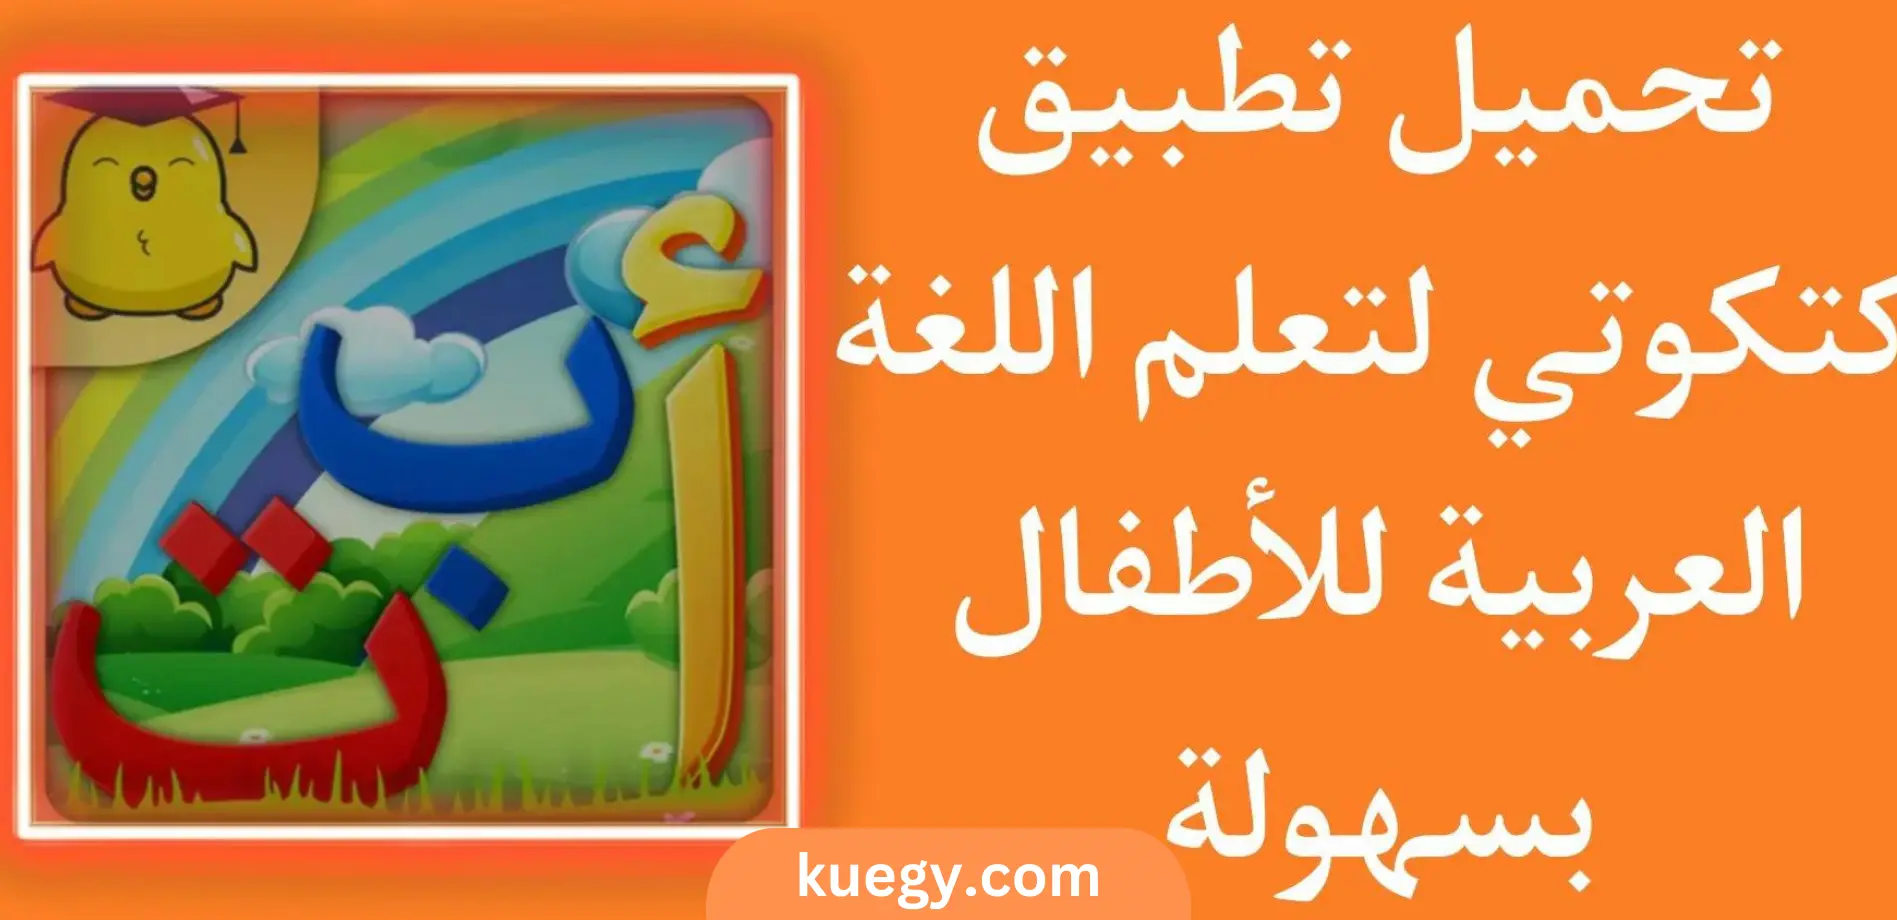 تحميل برنامج كتكوتي معلم اللغة العربية